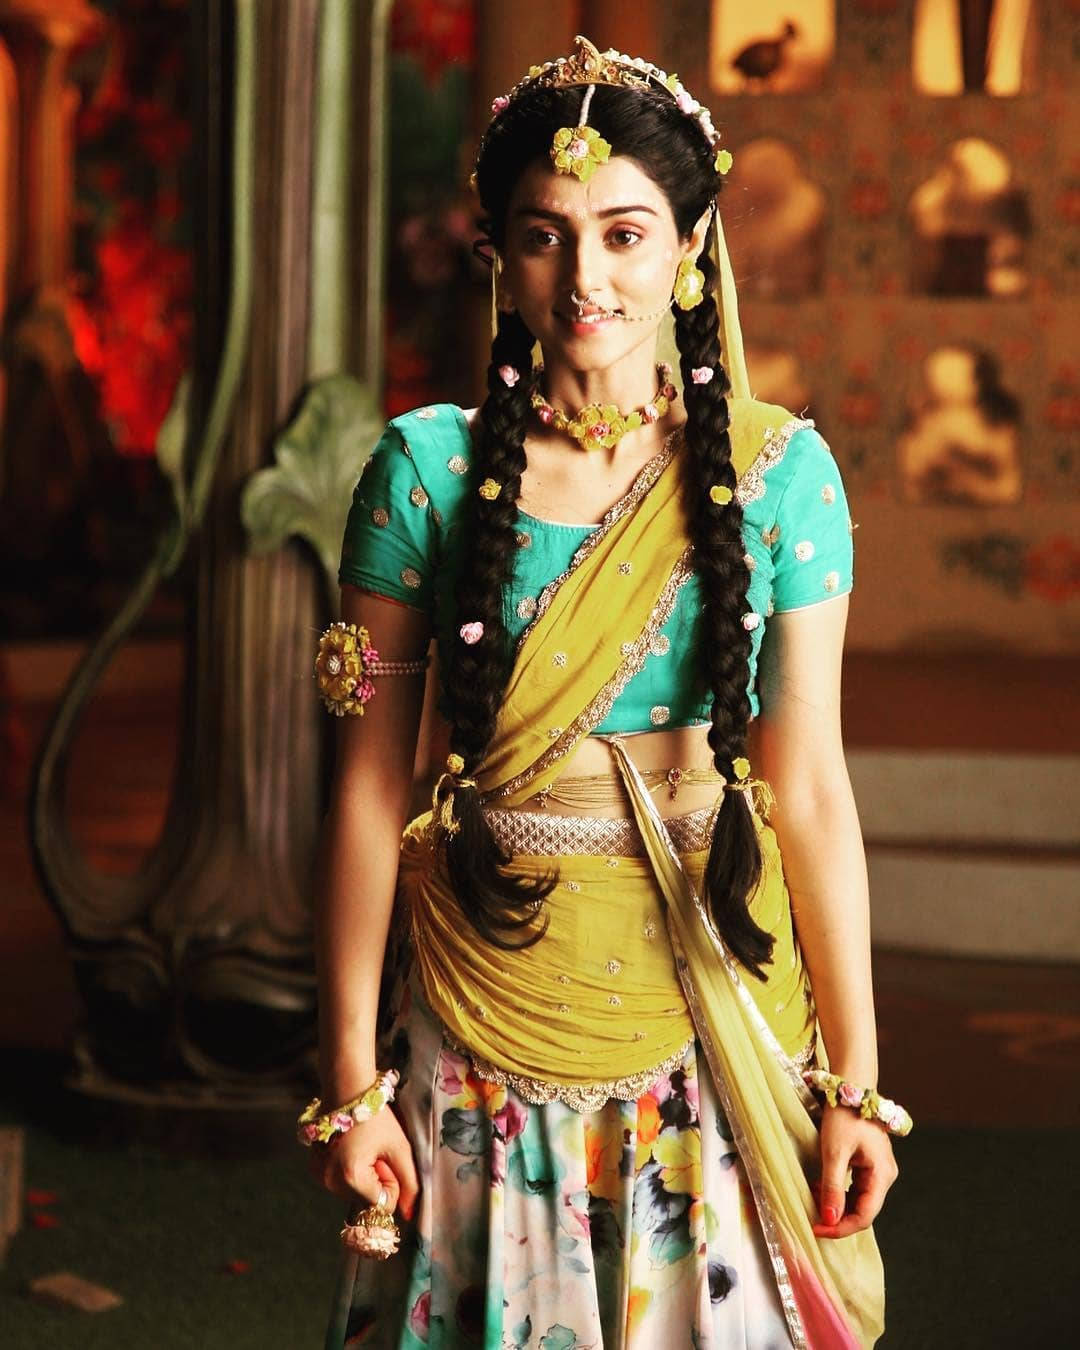 Mallikasingh Lächelnd In Indischer Kleidung Wallpaper